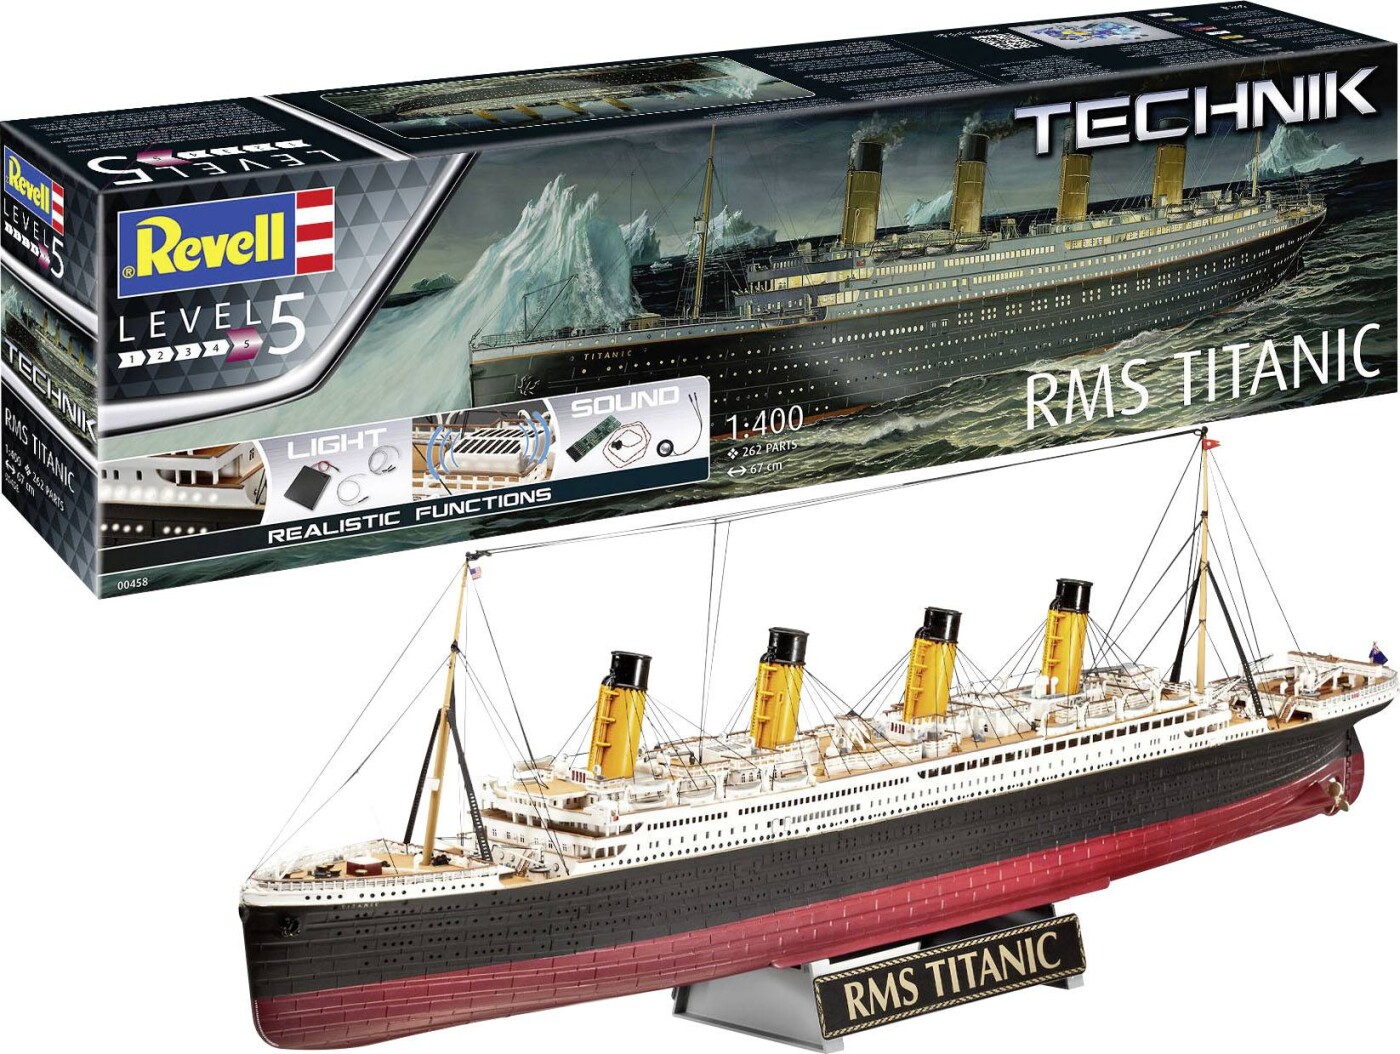 Billede af Revell Technik - Rms Titanic Skib Byggesæt - 1:400 - Level 5 - 00458